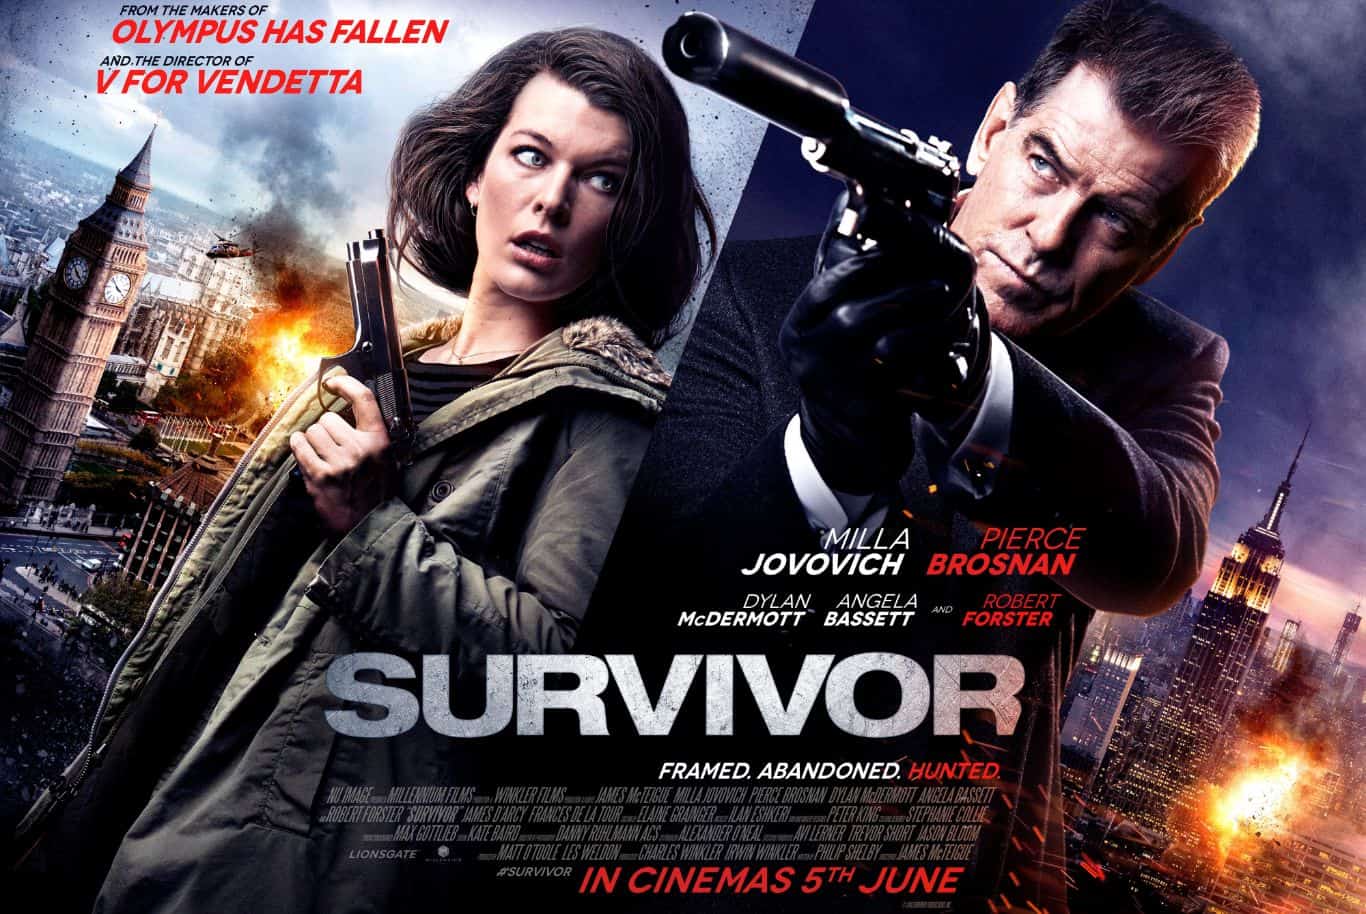 Survivor (2015) Bluray Google Drive Download